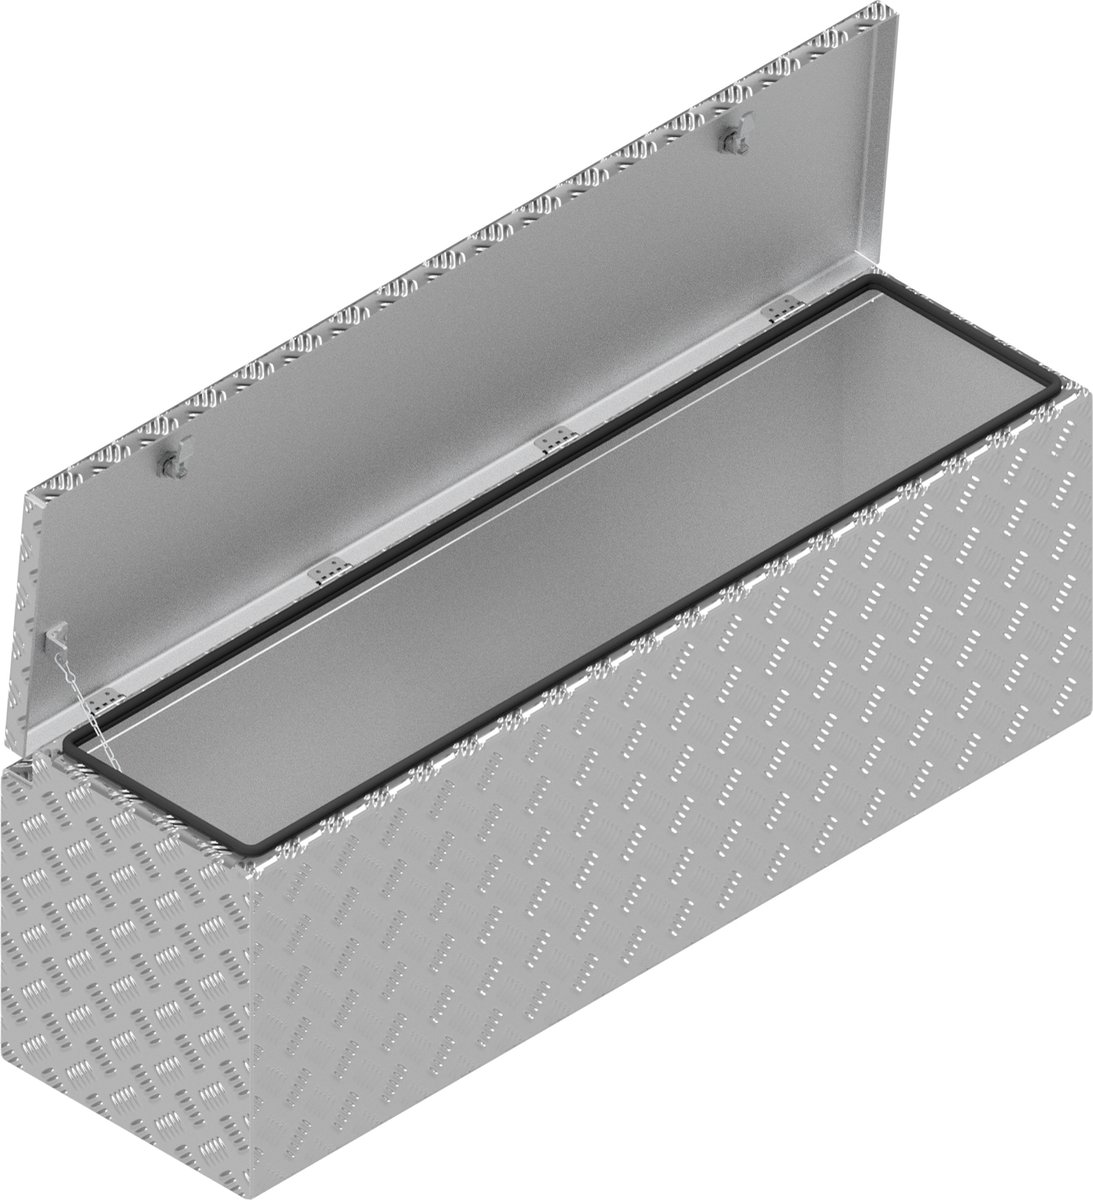 DE HAAN BOX HUW - 1140x340x400 mm aluminium traanplaat disselkist - voorzien van vlinderslot